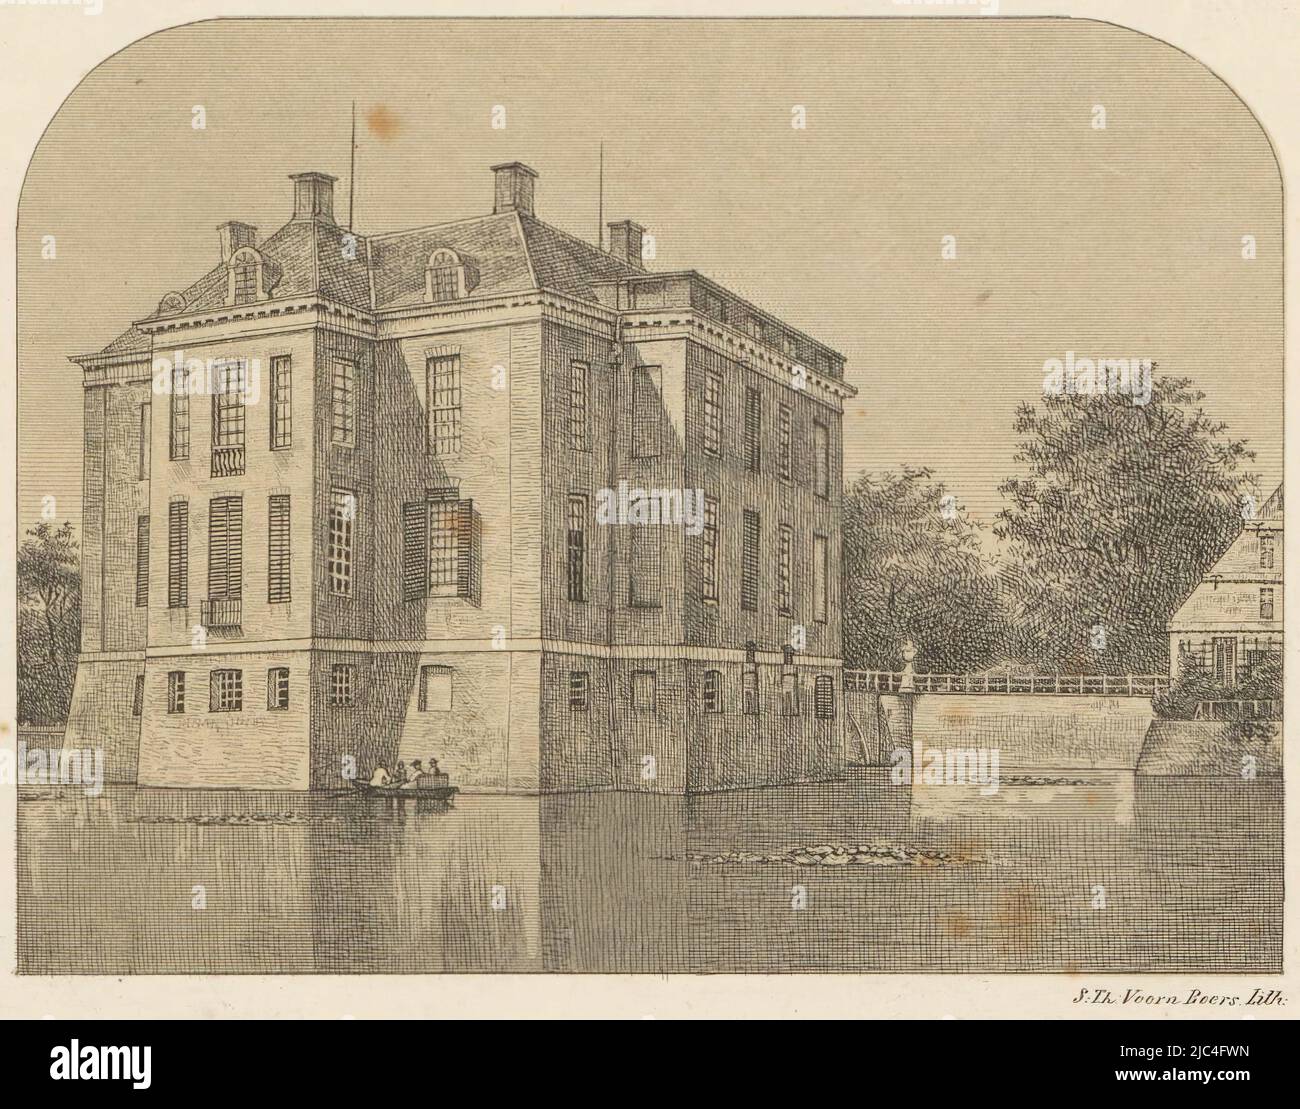 Vue sur le château de Middachten la maison de Middachten de l'arrière gauche, imprimerie: Sebastiaan Theodorus Voorn Boers, (mentionné sur l'objet), Rotterdam, 1838 - 1889, papier, h 121 mm - l 175 mm Banque D'Images